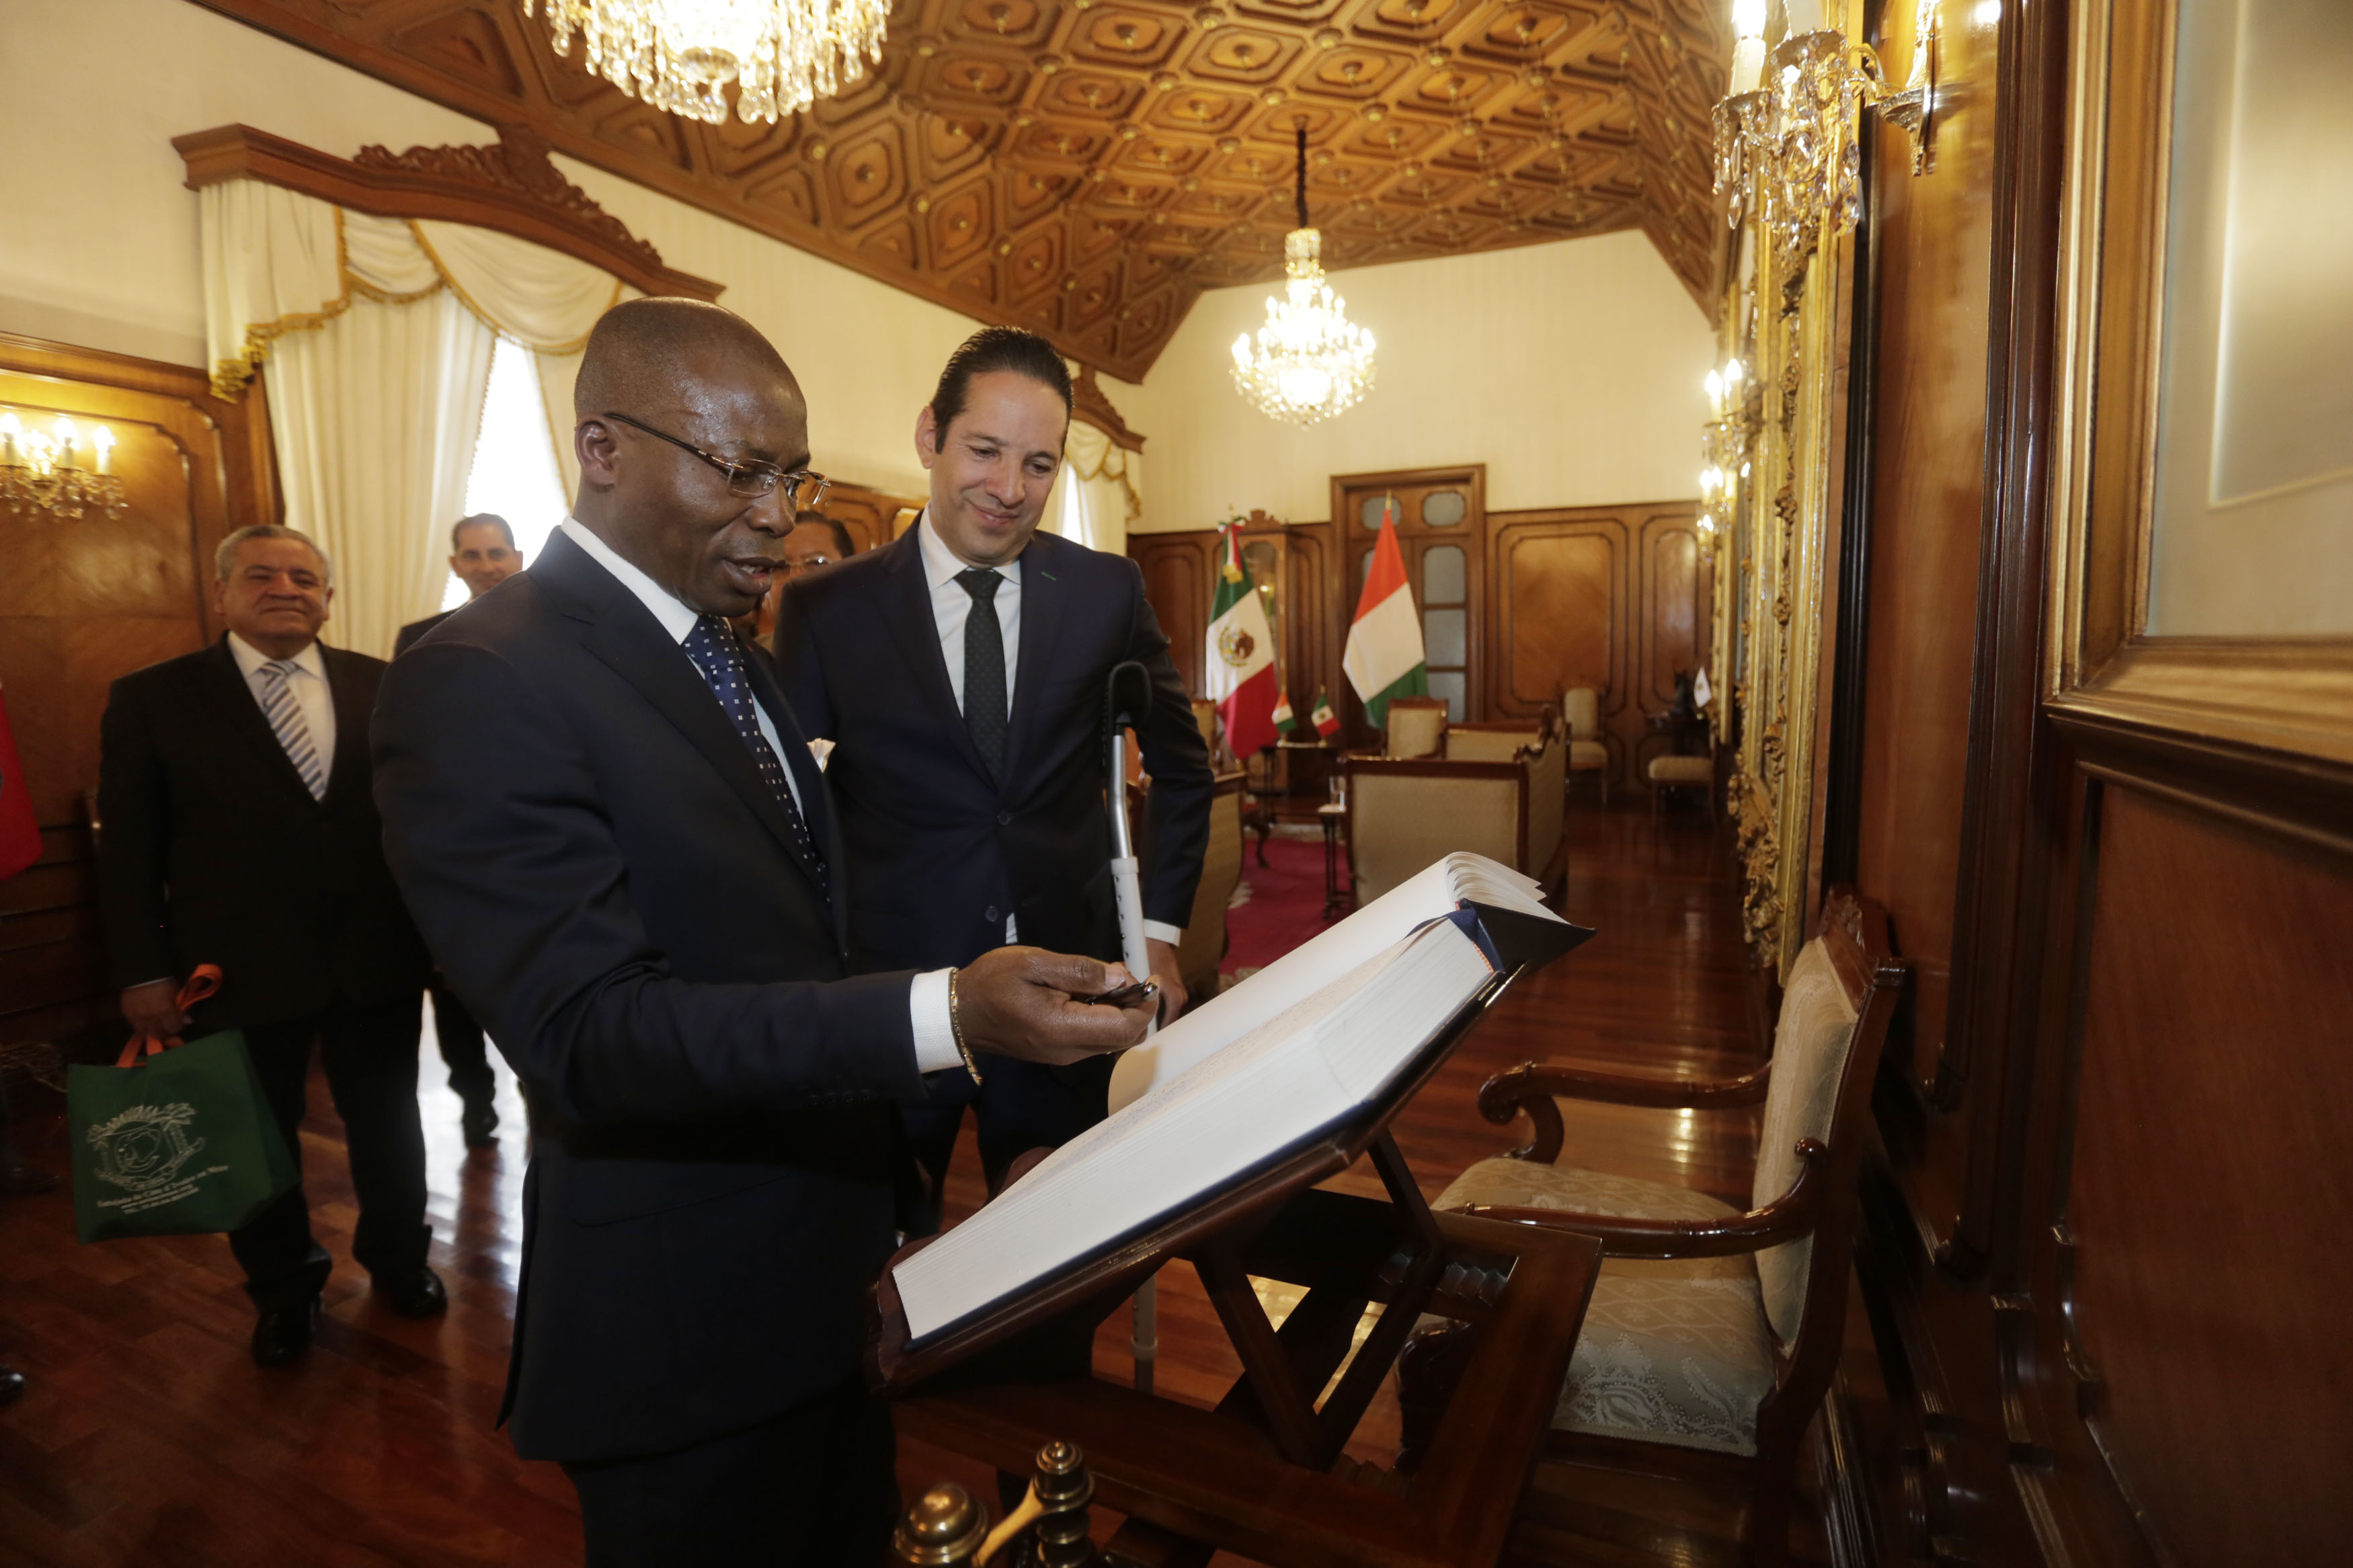  Gobernador Domínguez Servién recibe al embajador de Costa de Marfil